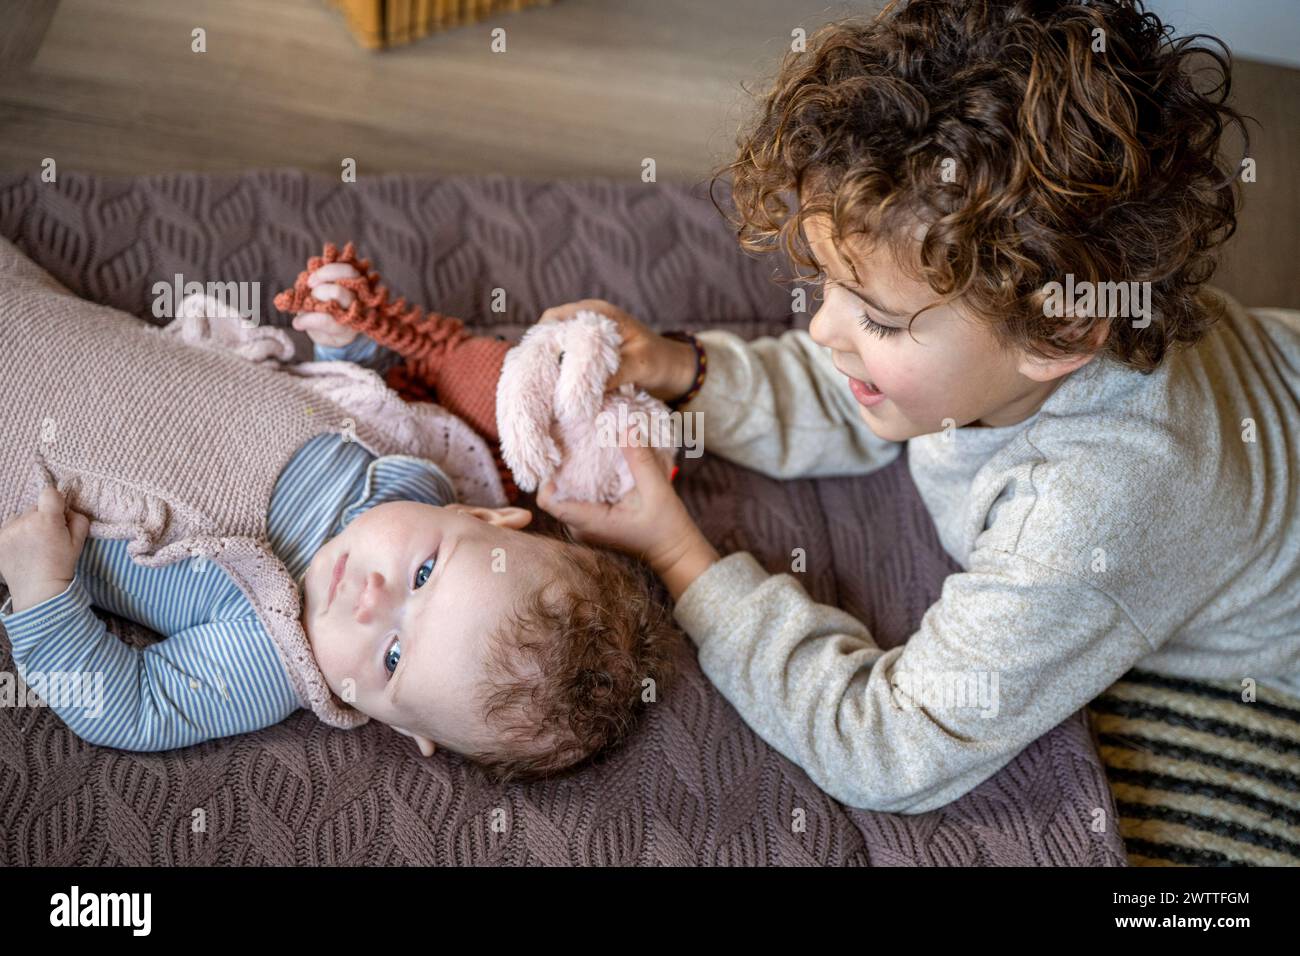 Älteres Kind interagiert zärtlich mit seinem auf einem Bett liegenden Geschwister. Stockfoto